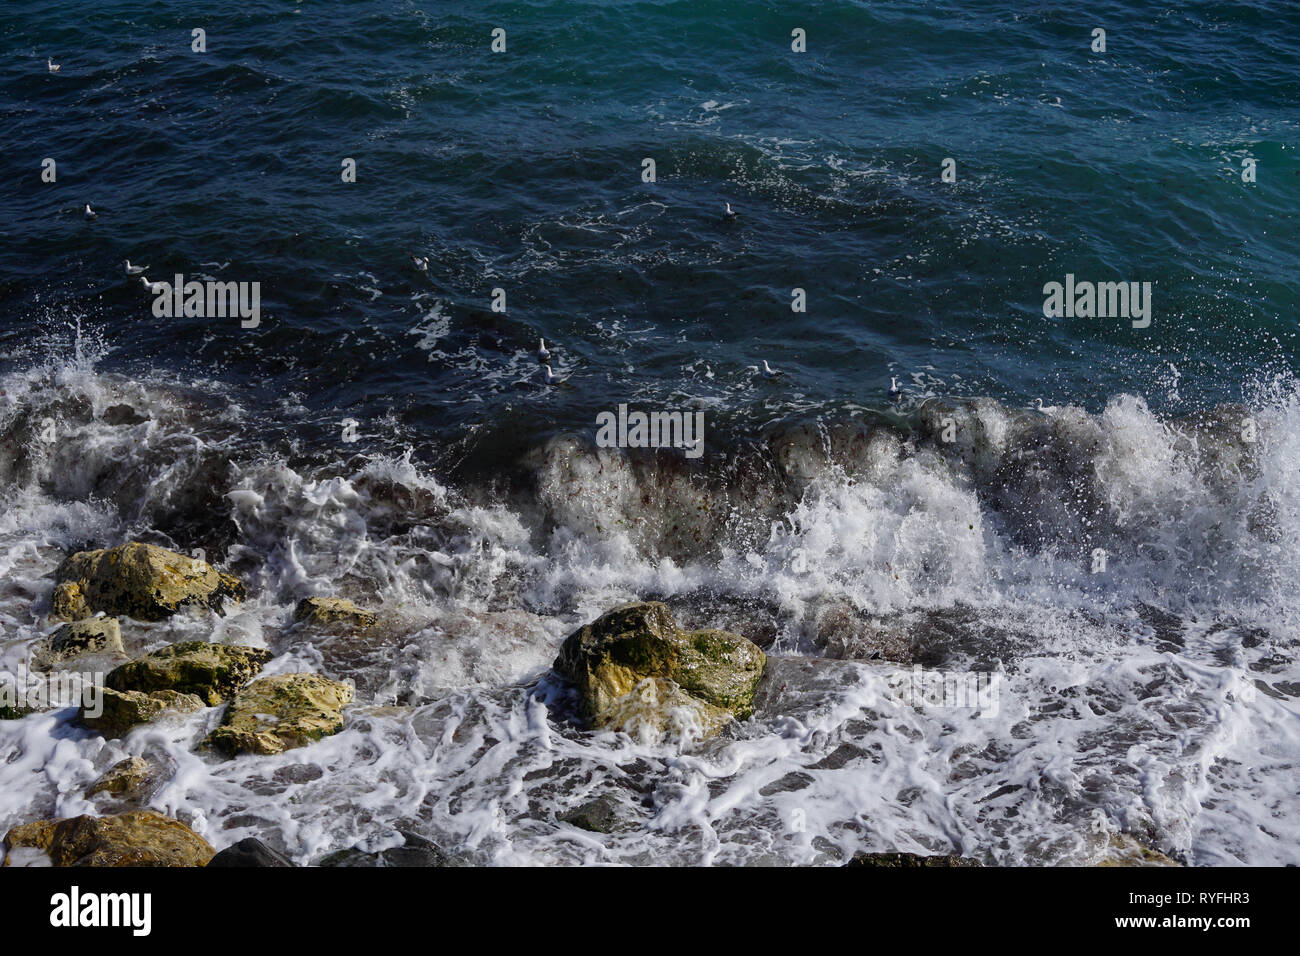 Breaking waves in rocks Stock Photo